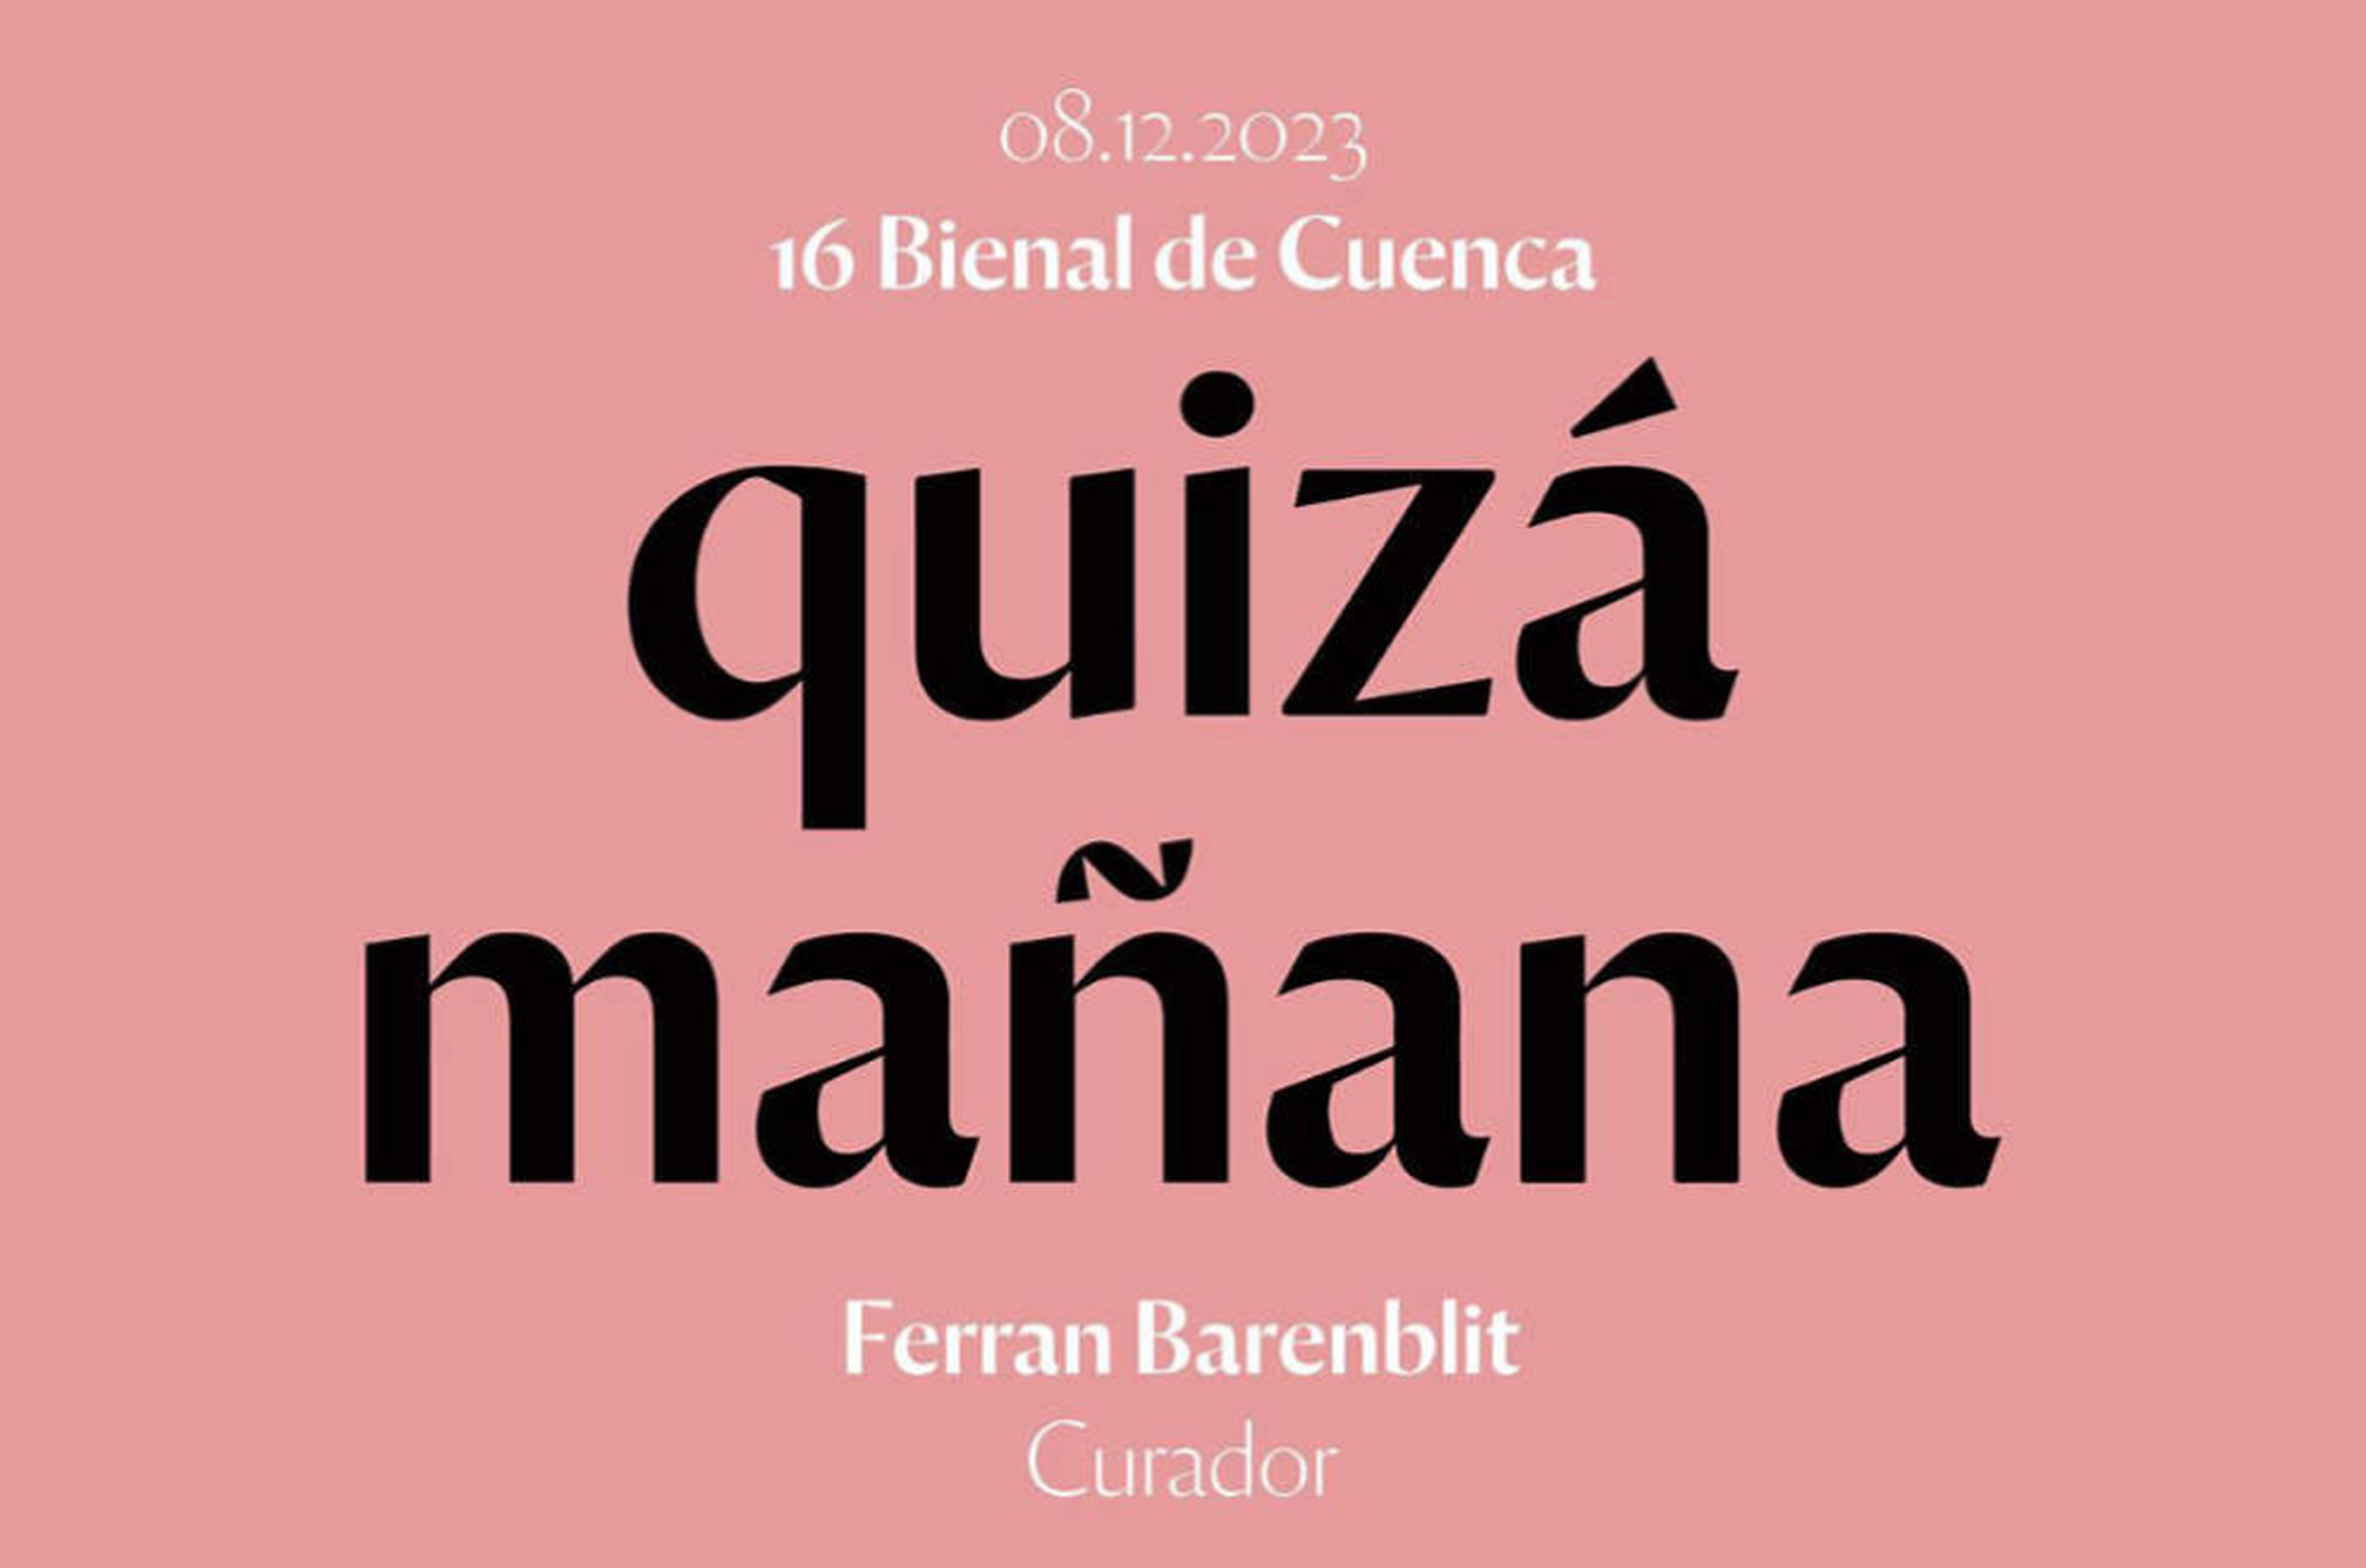 Quizá manana - 16th Cuenca Biennial 2023